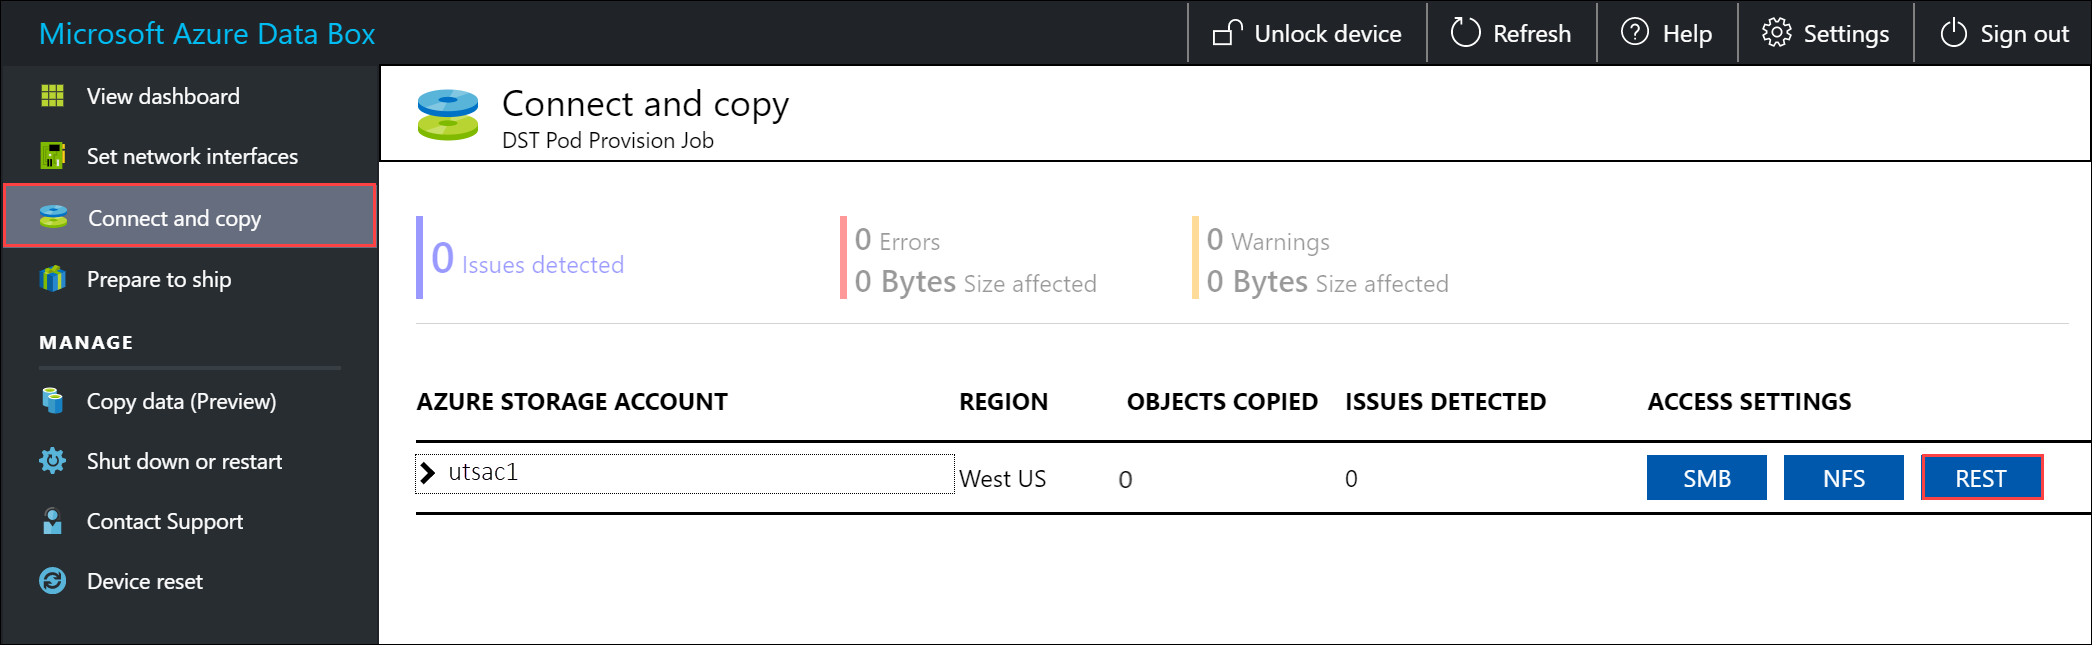 Screenshot che mostra il riquadro Connetti e copia in cui è possibile selezionare REST come impostazione di accesso.